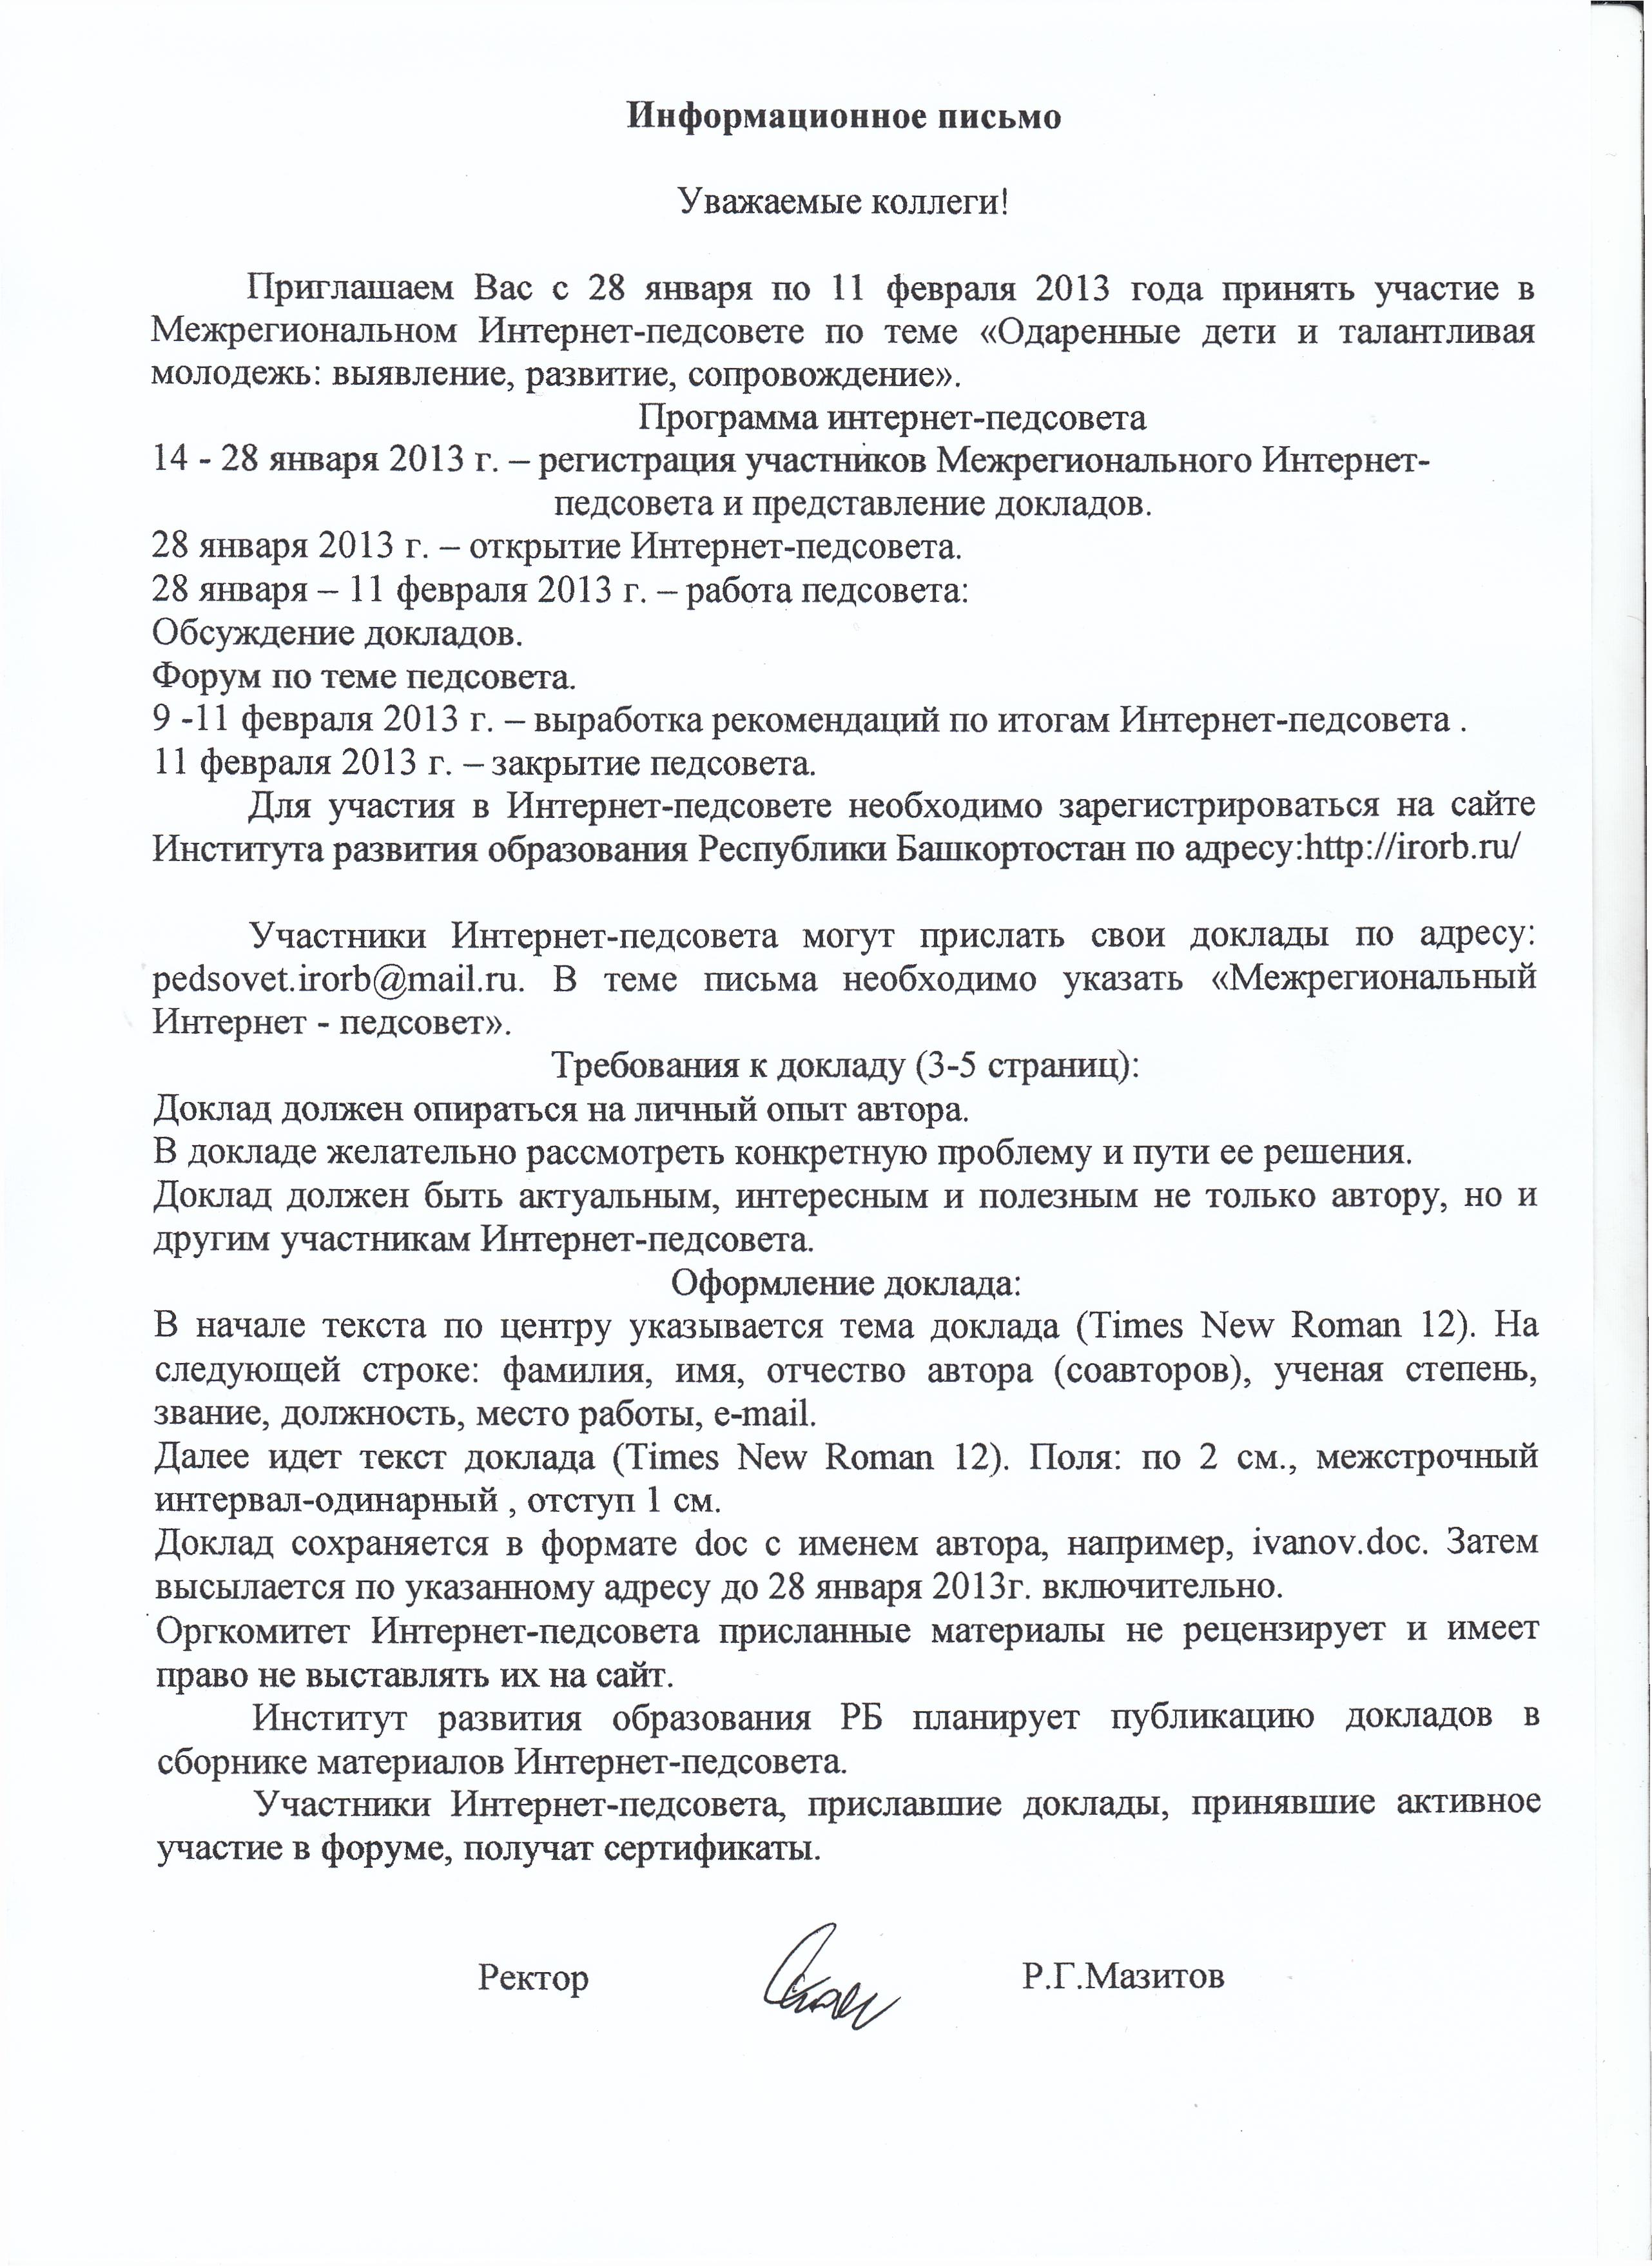 Рабочая программа по русскому языку давлетбаева 2 класс 4 часа в неделю